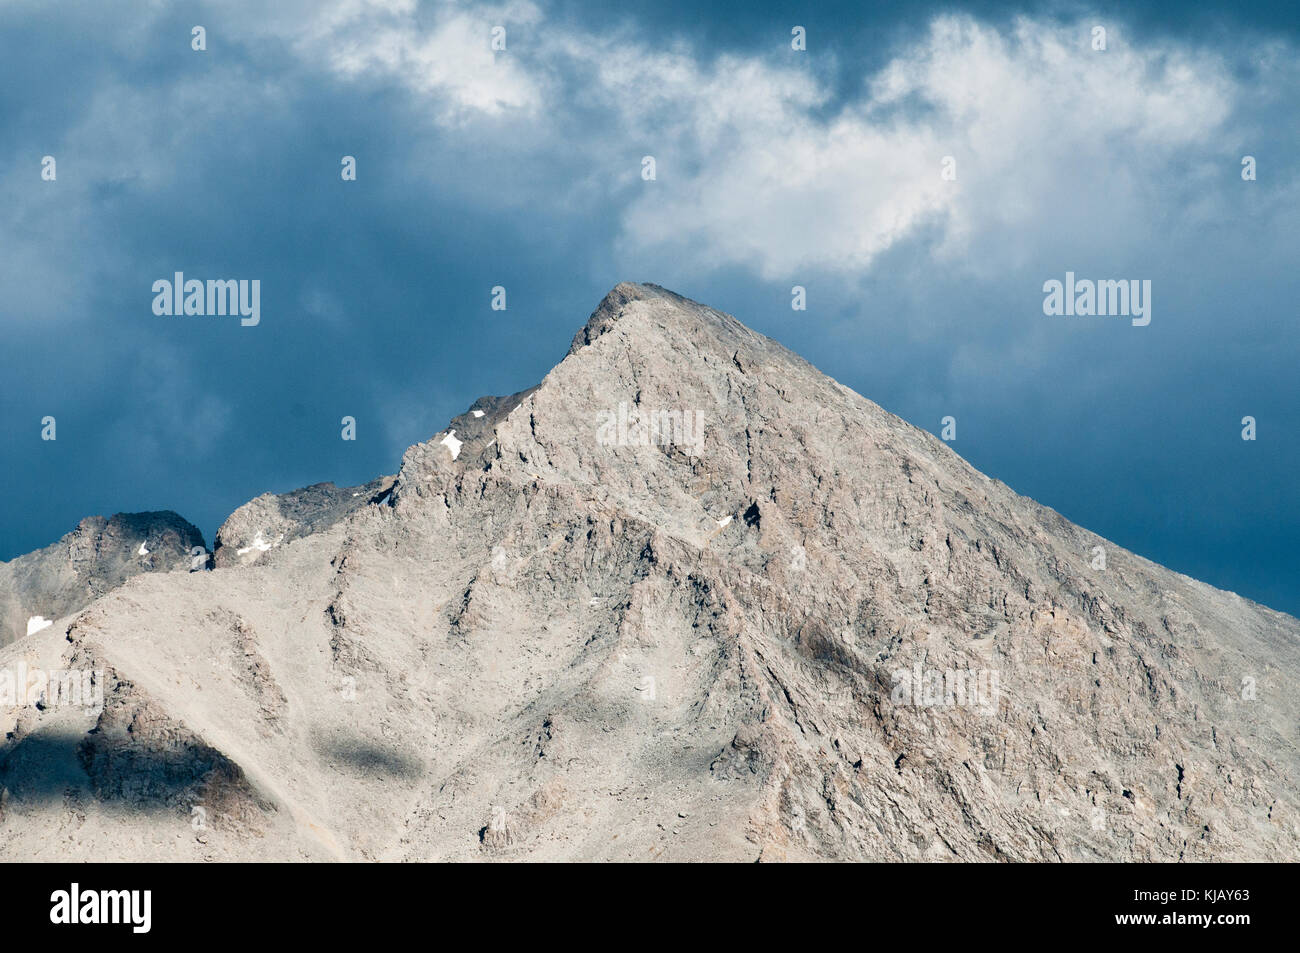 Mt. Borah, la montaña más alta de Idaho (12,668 ft. después del terremoto de 1983 levantada por lo menos 6 pulgadas). Foto de stock